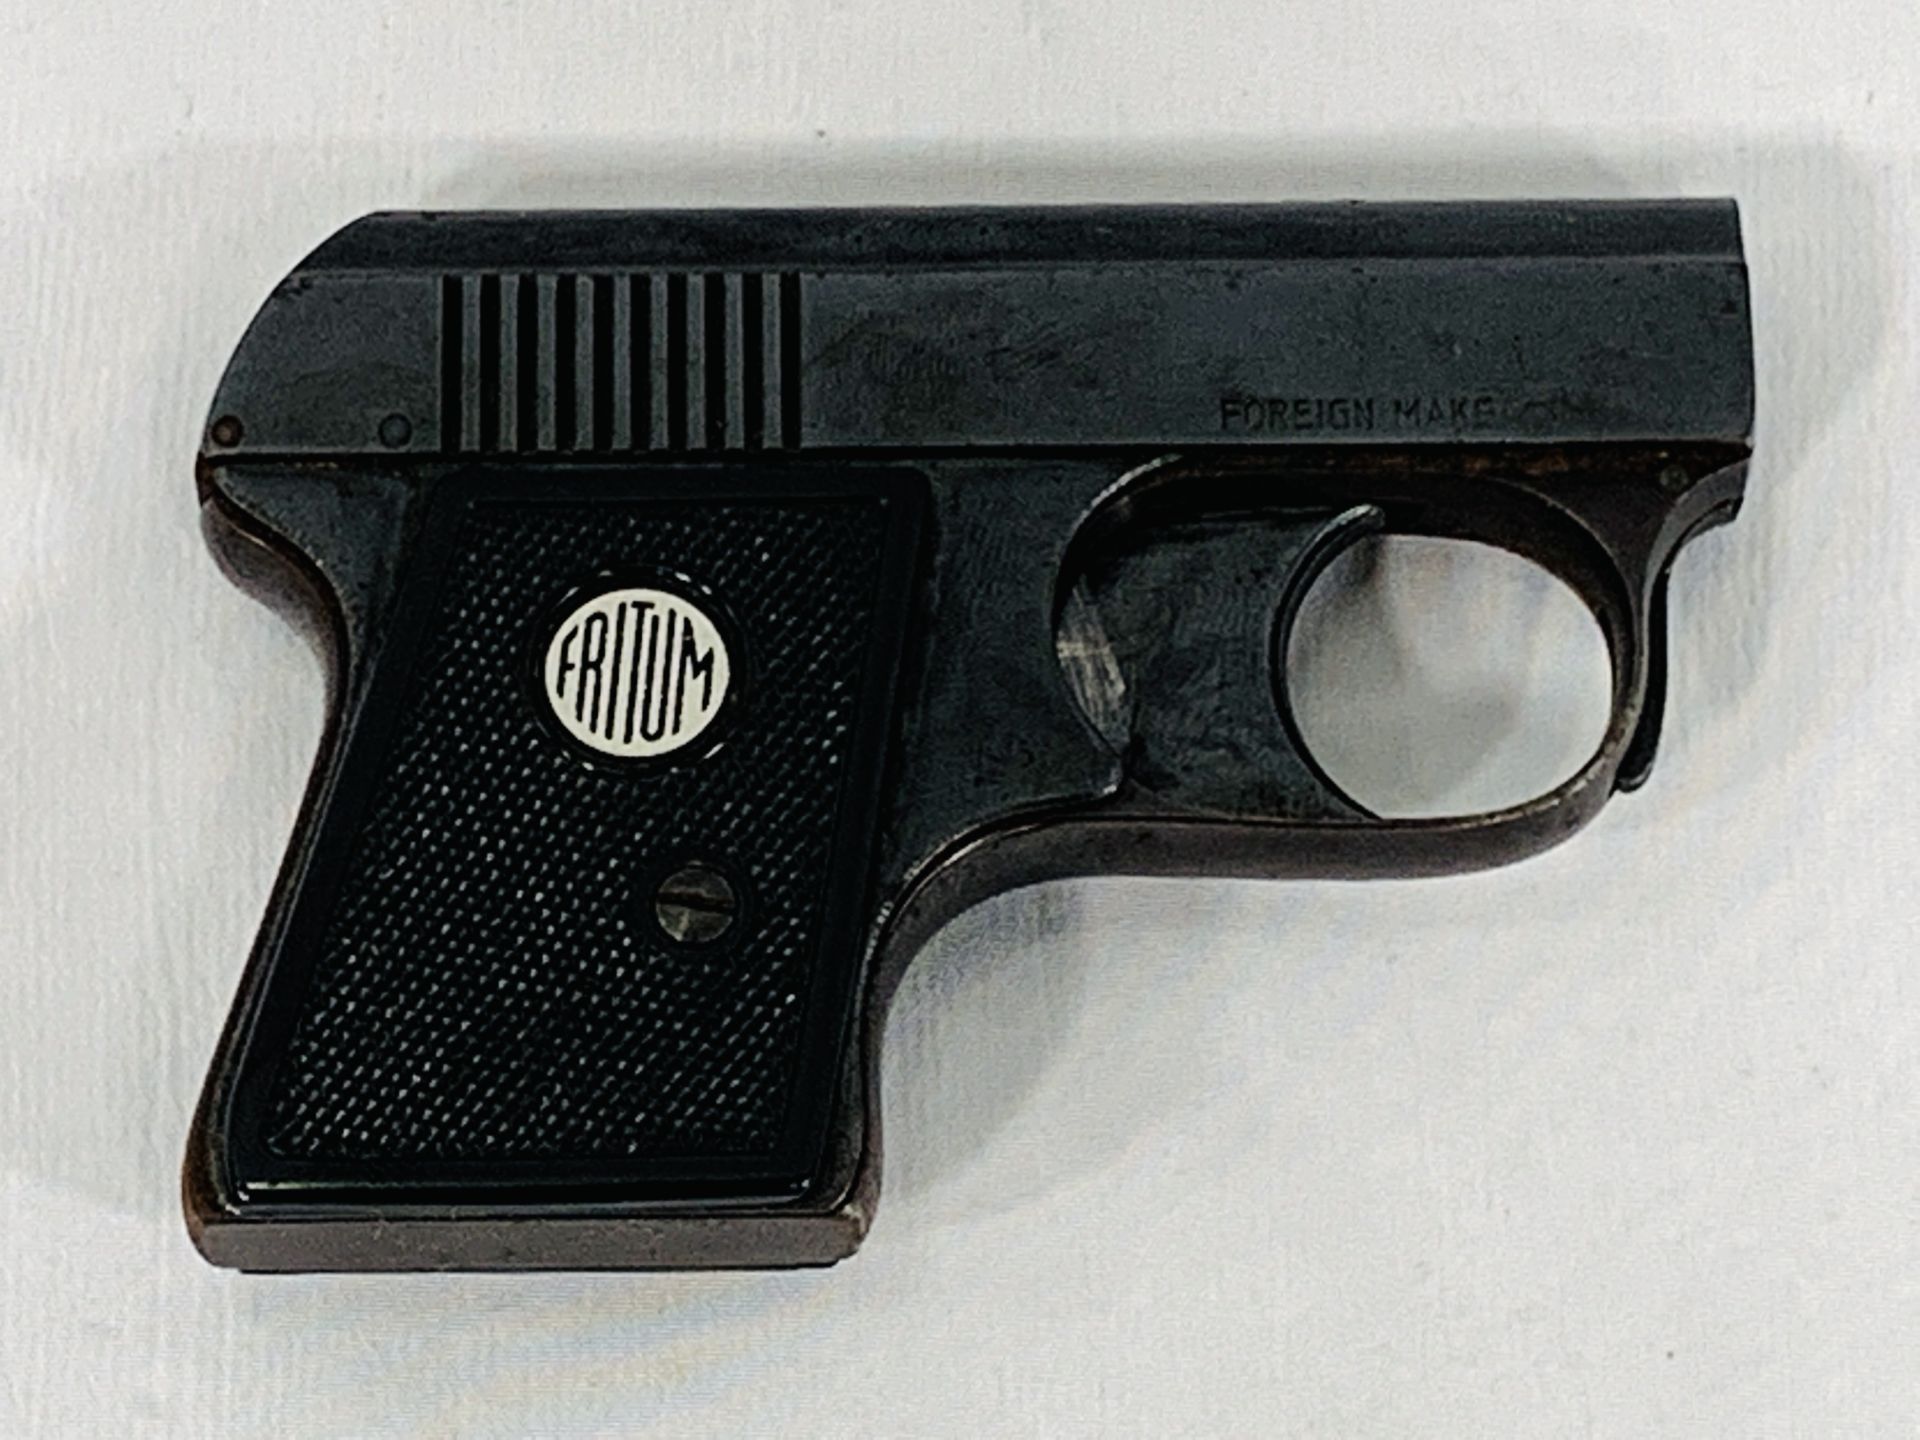 Fritum starting pistol - Image 2 of 3